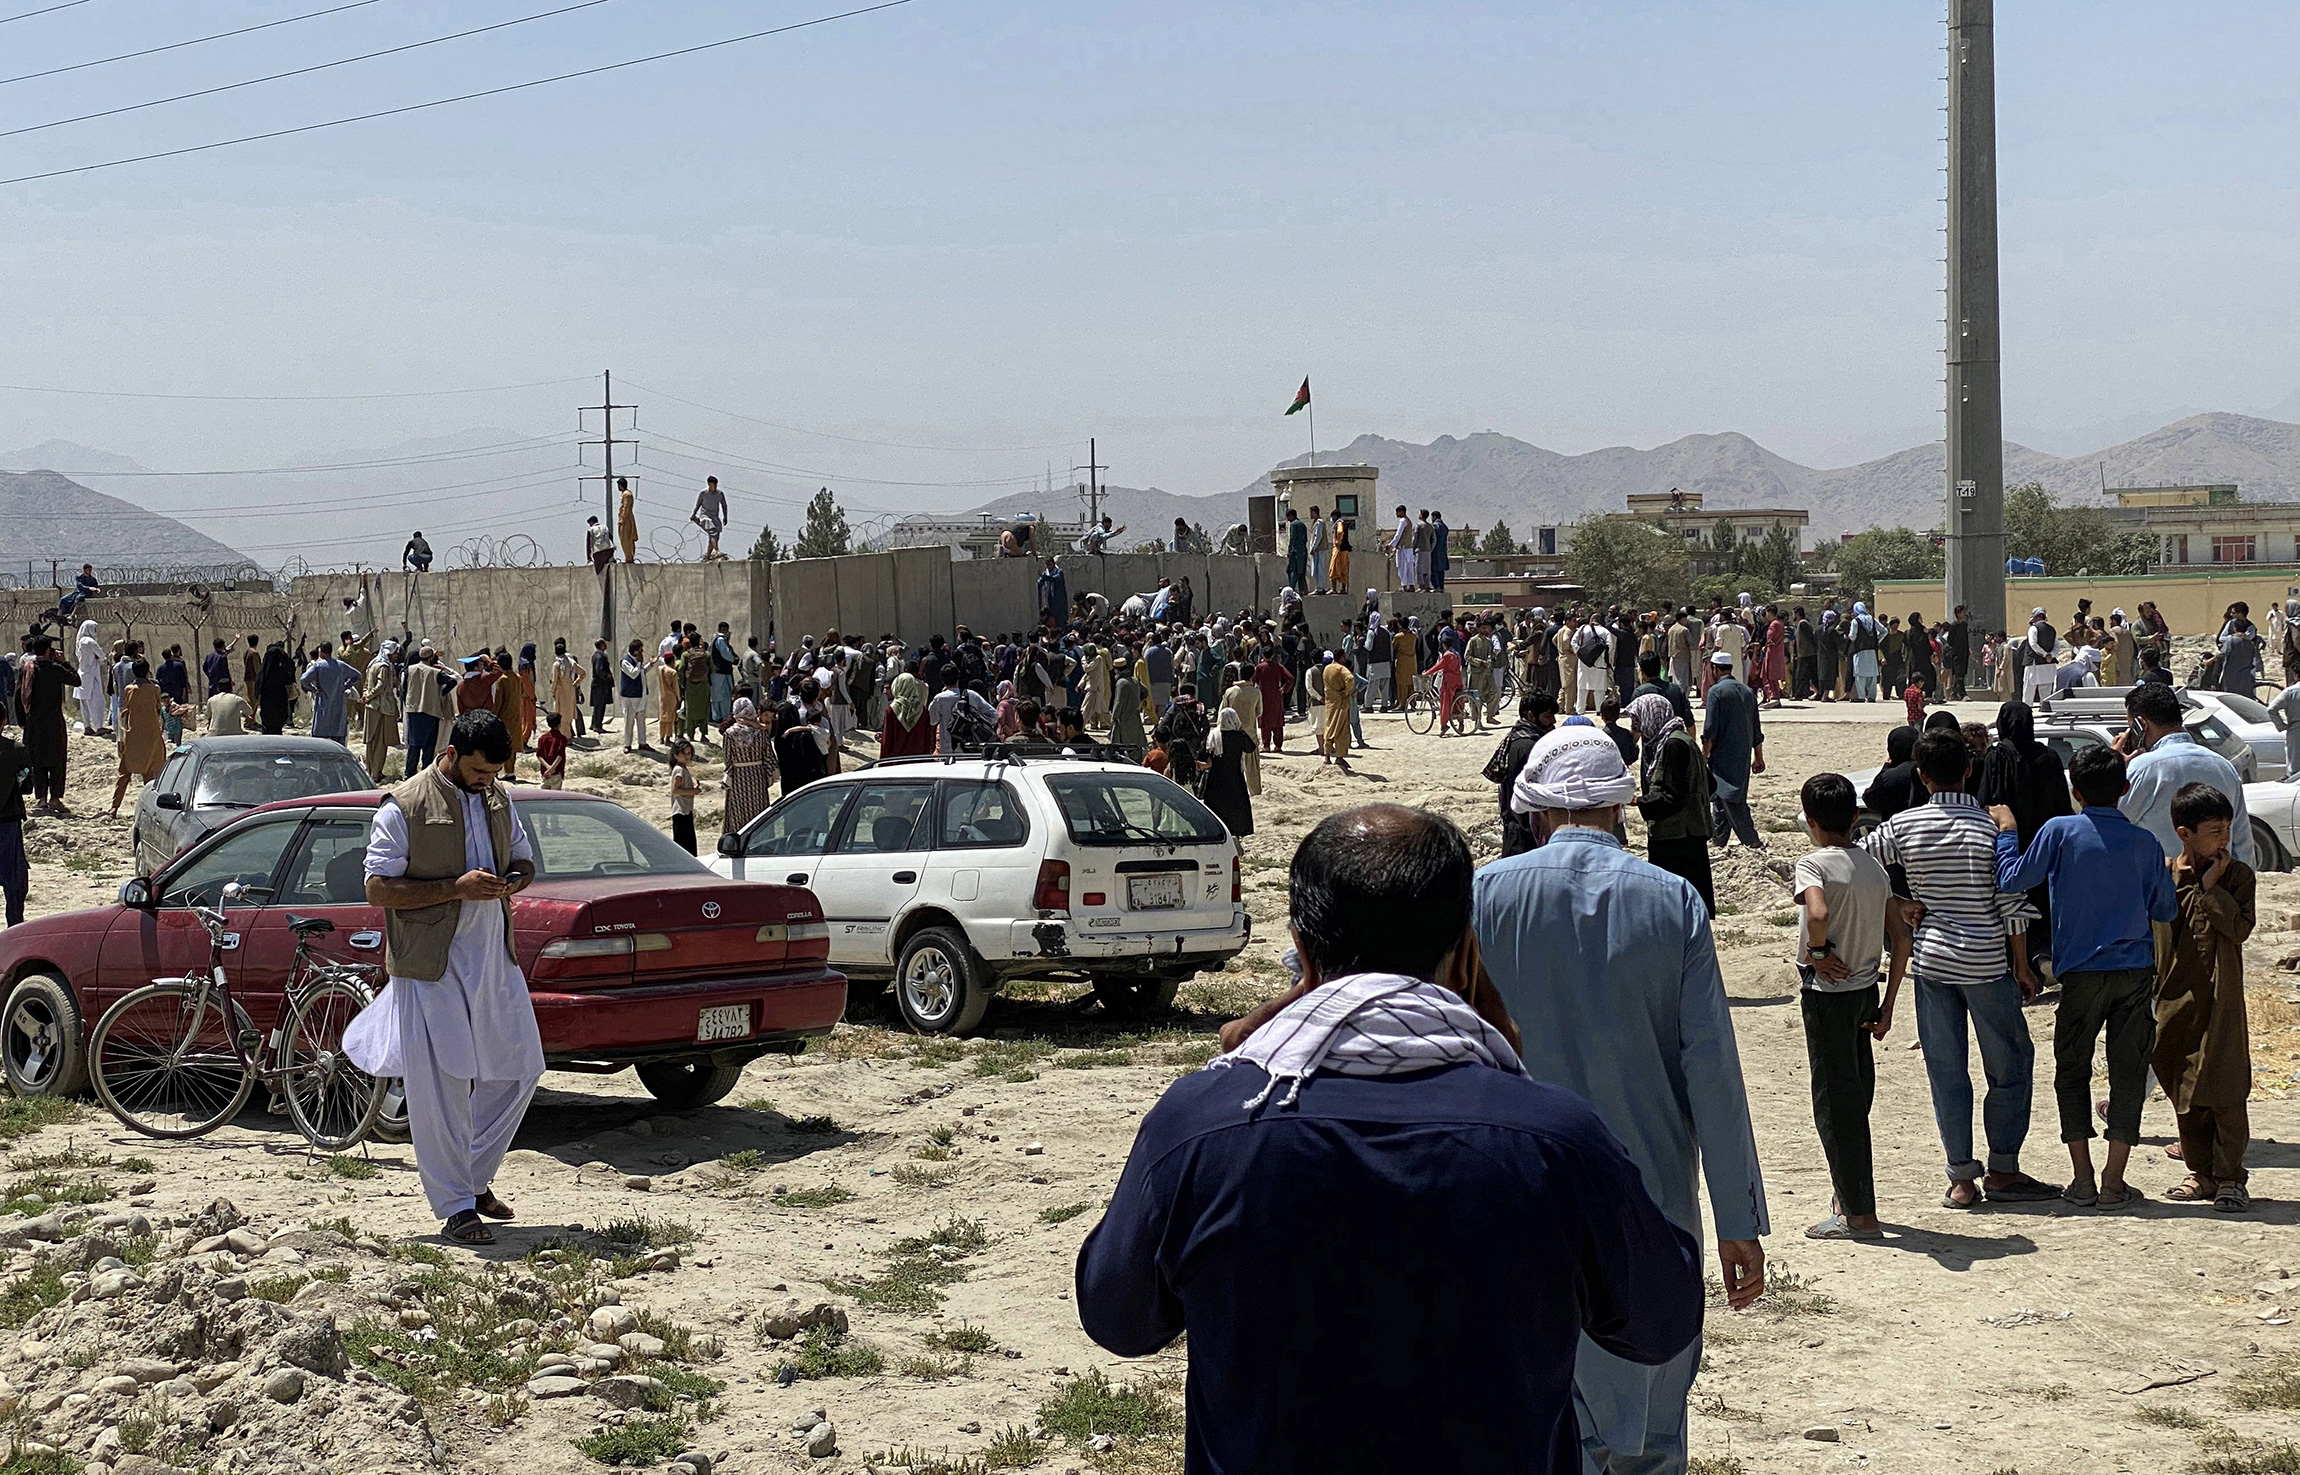 На фото: люди пытаются преодолеть ограждение международного аэропорта в Кабуле, 16 августа 2021 года

За первую неделю после вступления талибов в Кабул из Афганистана было эвакуировано около 12 тыс. иностранцев и афганских граждан, работавших в посольствах и международных гуманитарных организациях